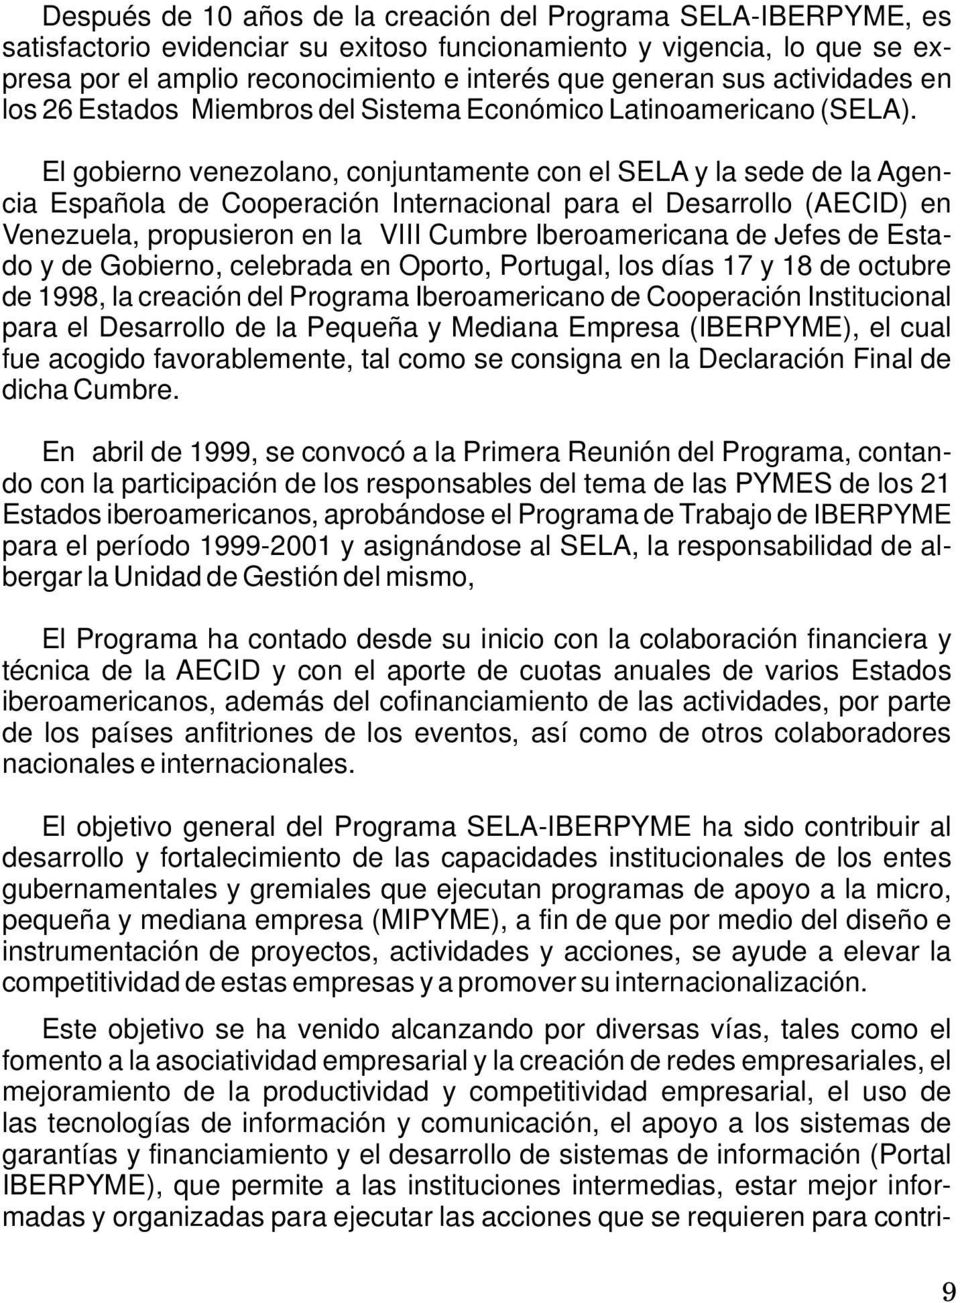 El gobierno venezolano, conjuntamente con el SELA y la sede de la Agencia Española de Cooperación Internacional para el Desarrollo (AECID) en Venezuela, propusieron en la VIII Cumbre Iberoamericana